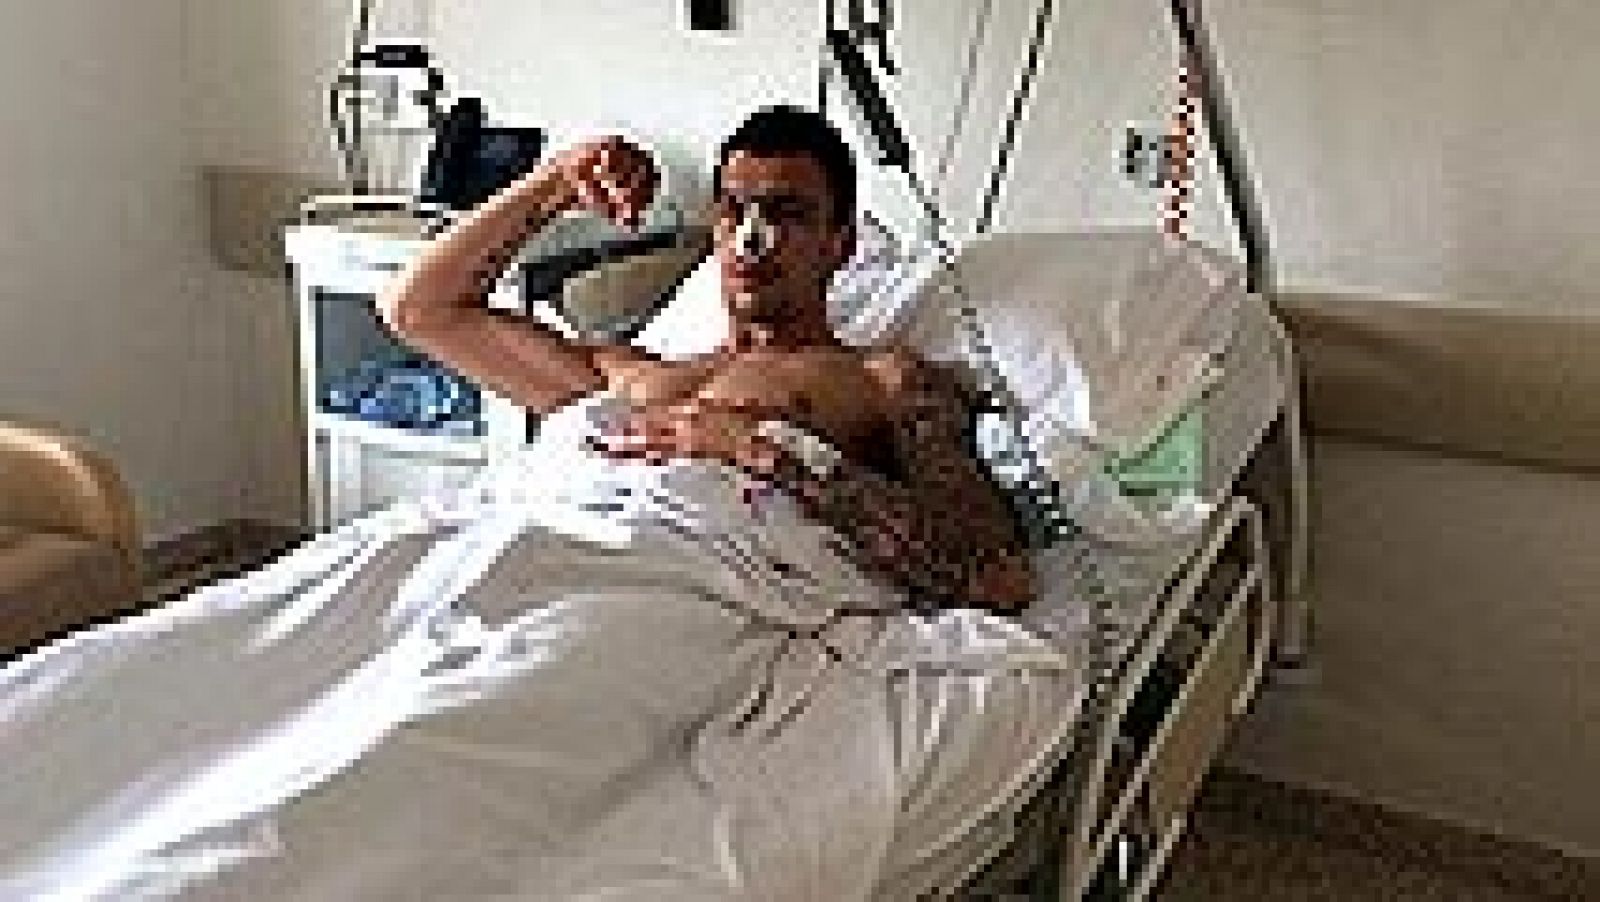 El delantero croata del Atlético de Madrid Mario Mandzukic ha sido operado con éxito de la fractura nasal que sufrió el martes en el partido contra el Olympiacos griego correspondiente a la Liga de Campeones, según ha informado el club rojiblanco en 